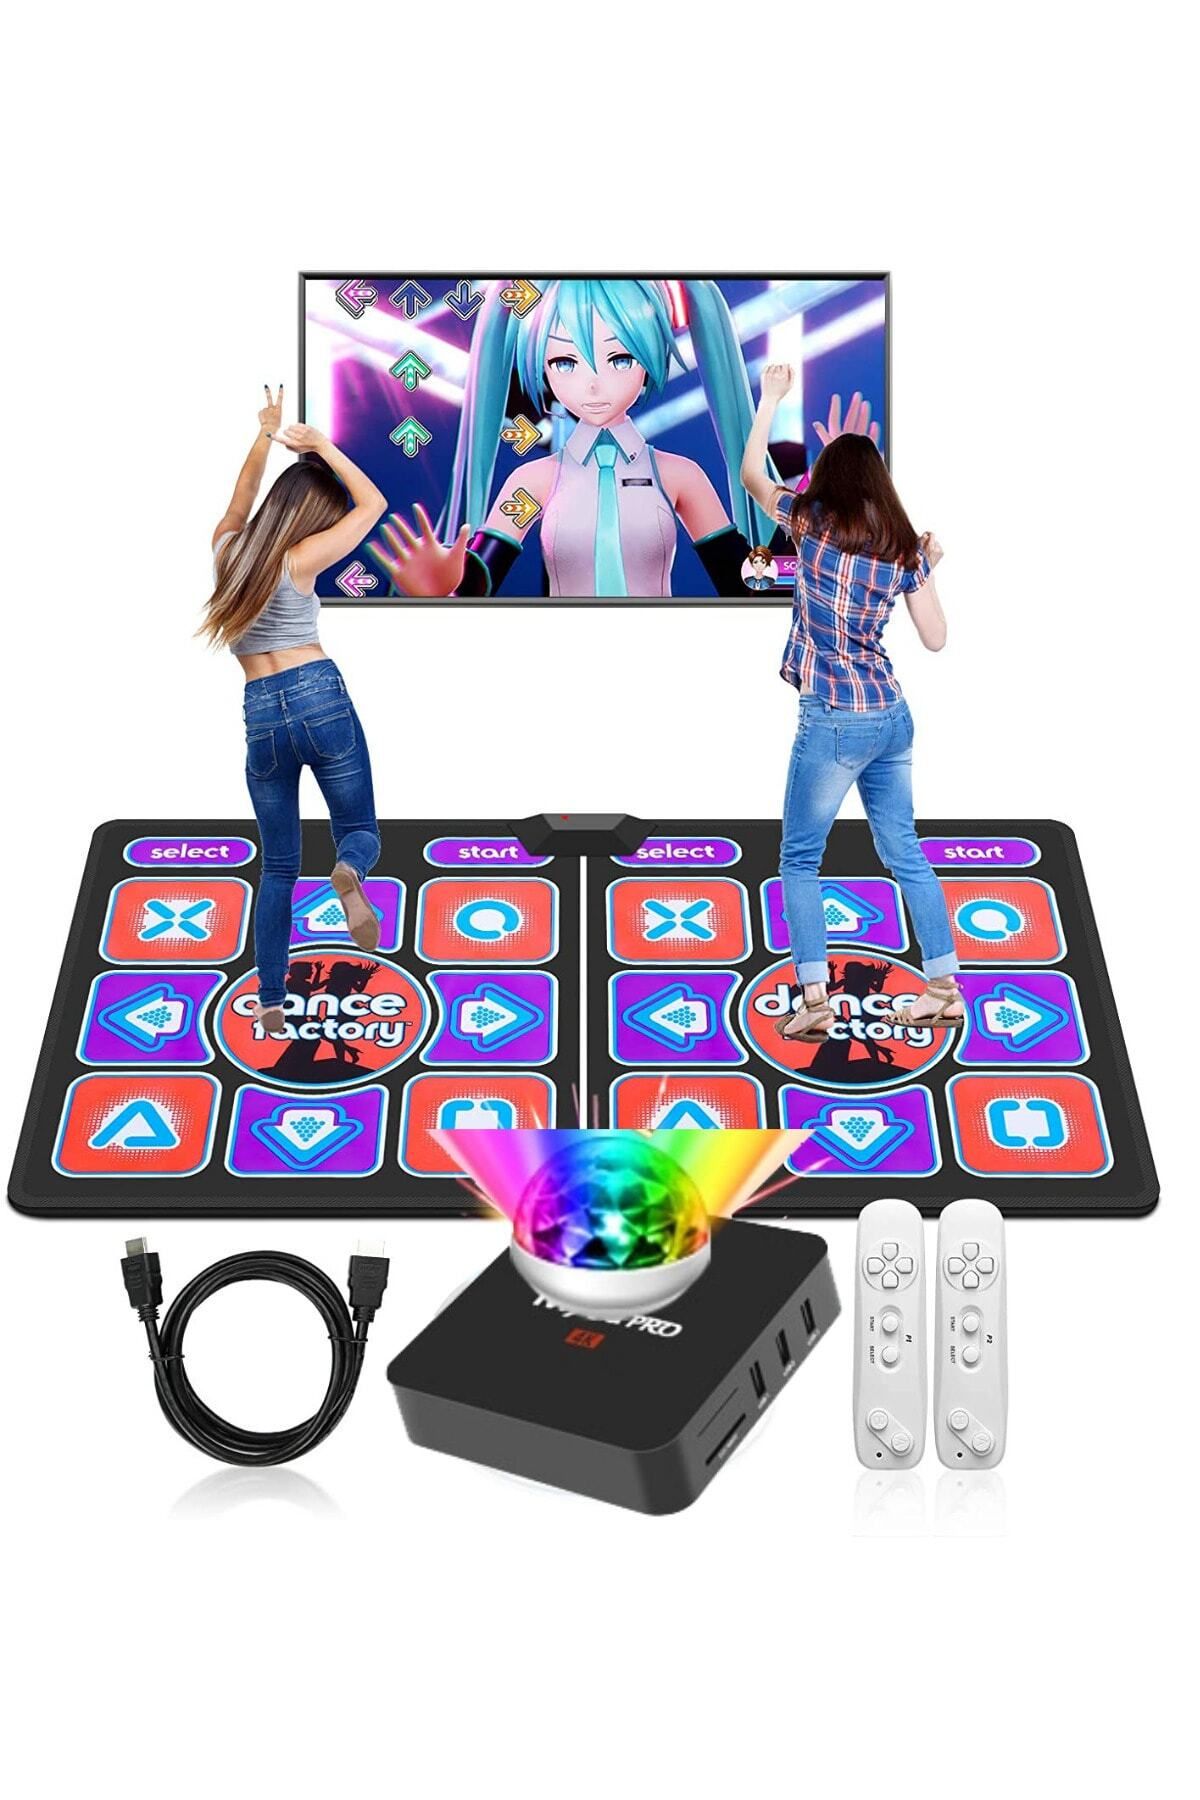 Nivagatore Tv Dans Halısı Yoga Matı Oyun Halısı Çift Kullanıcı Kablosuz Oyun Konsolu Gamepad 4k Renkli Lamba